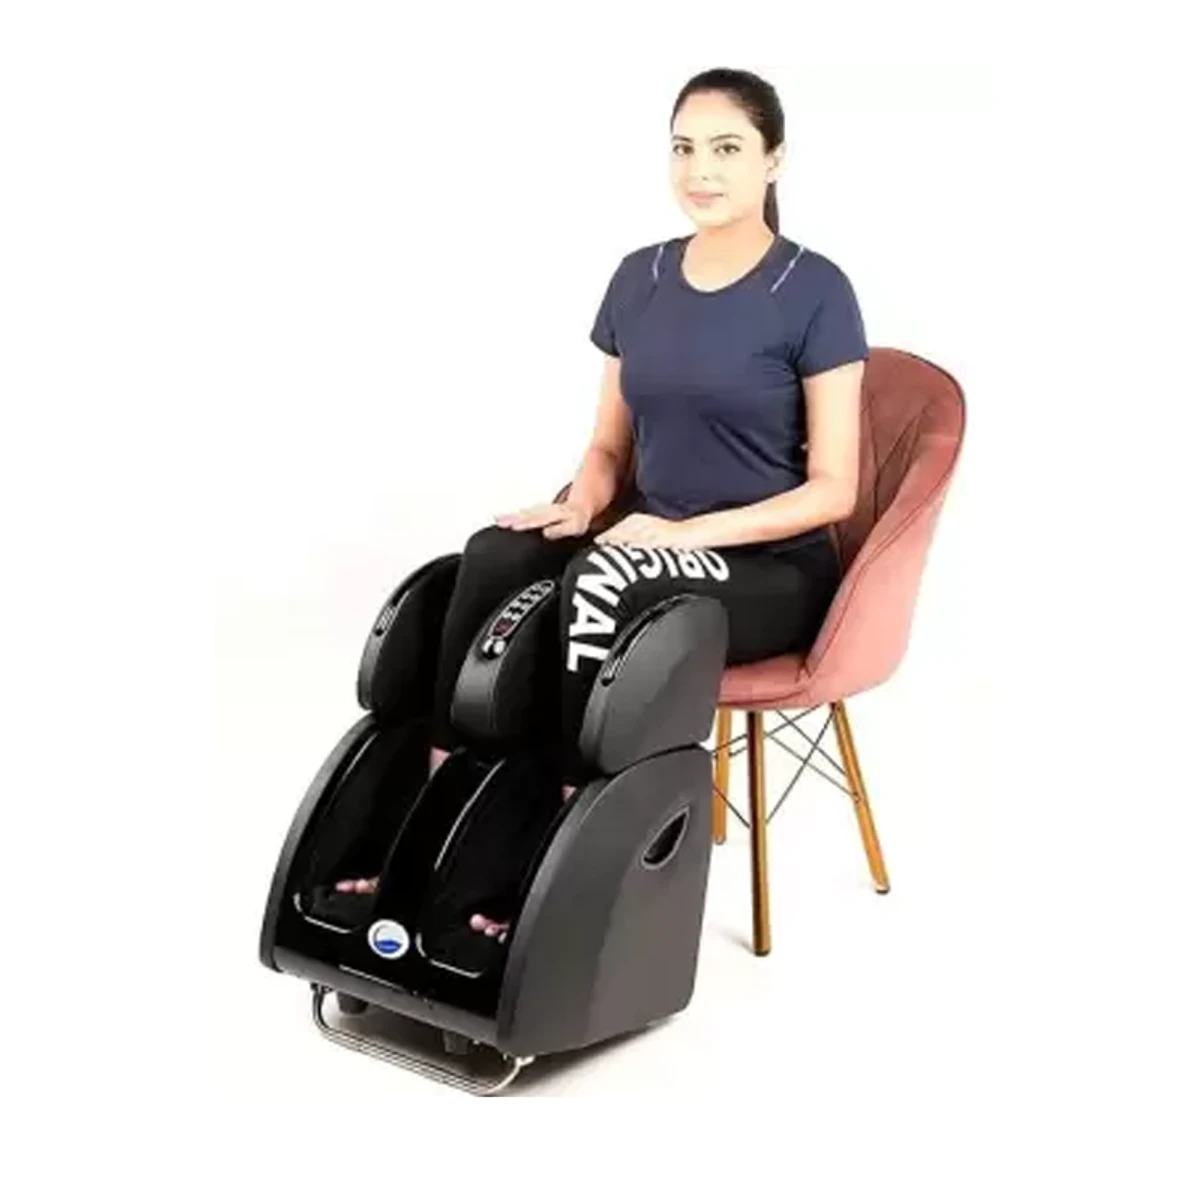 Pain Relief Leg Massager Foot Massager Calf Massager Ankle Massager Machine For Blood Circulation